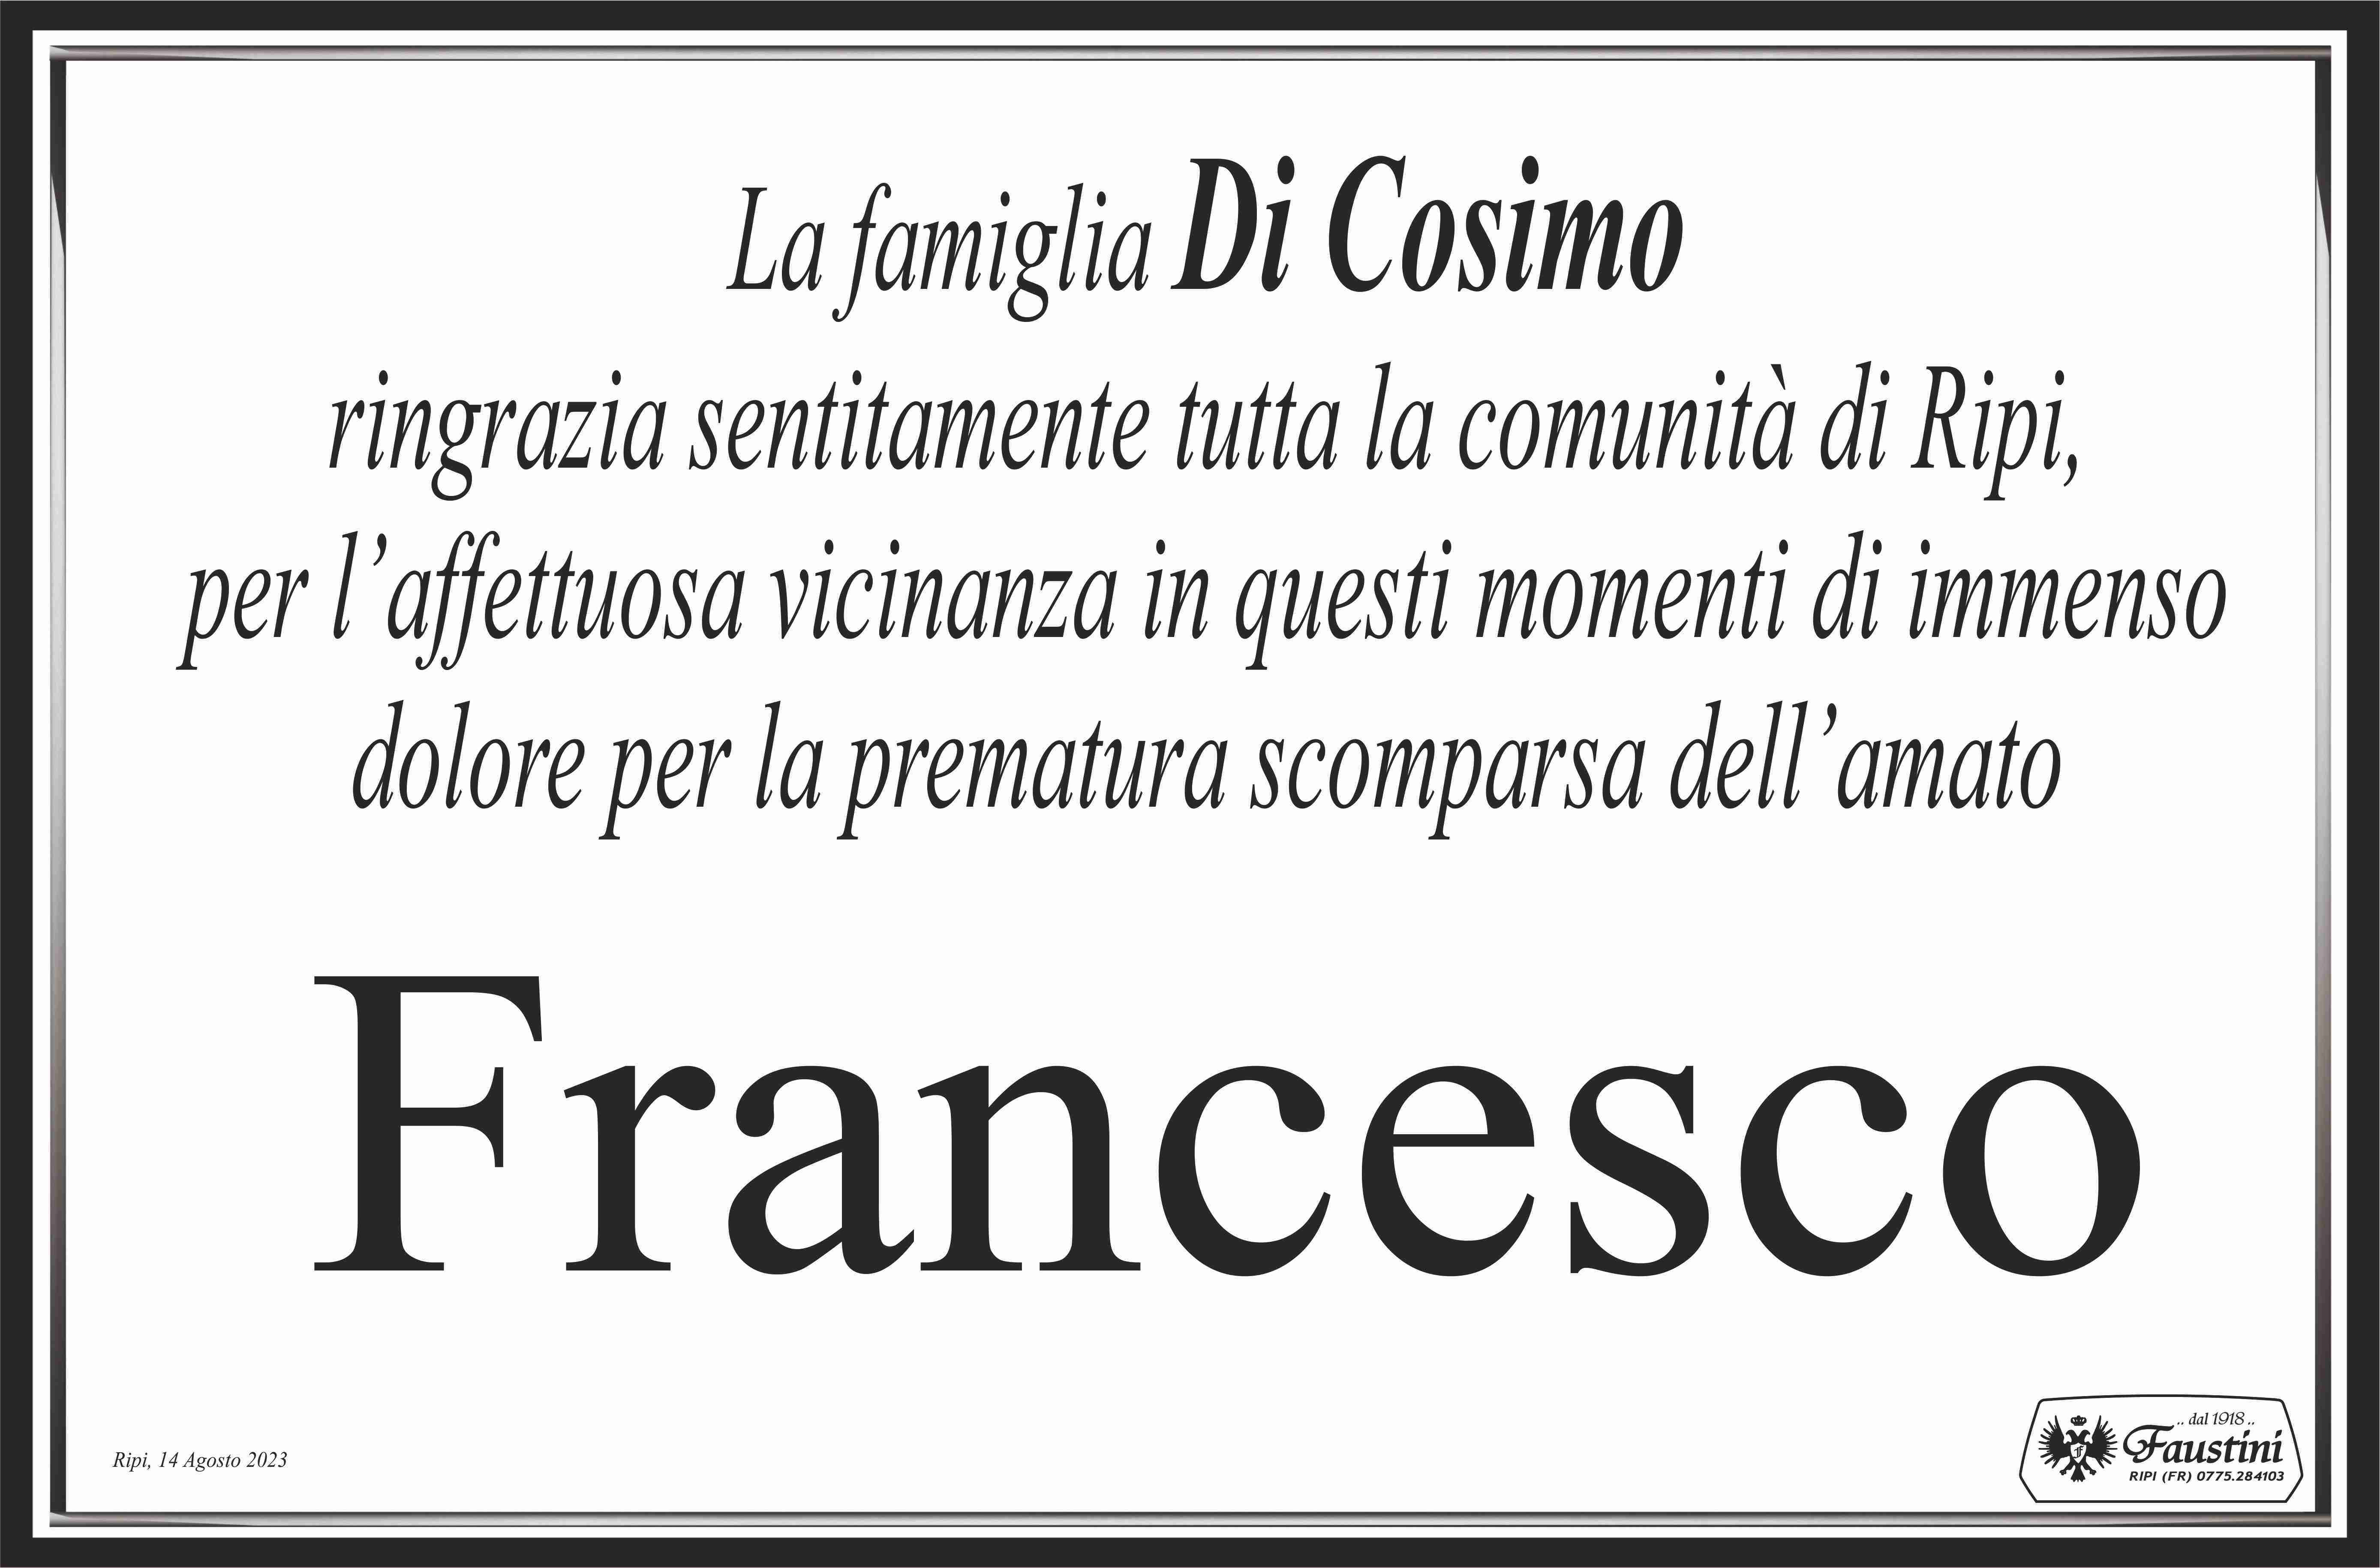 Francesco Di Cosimo